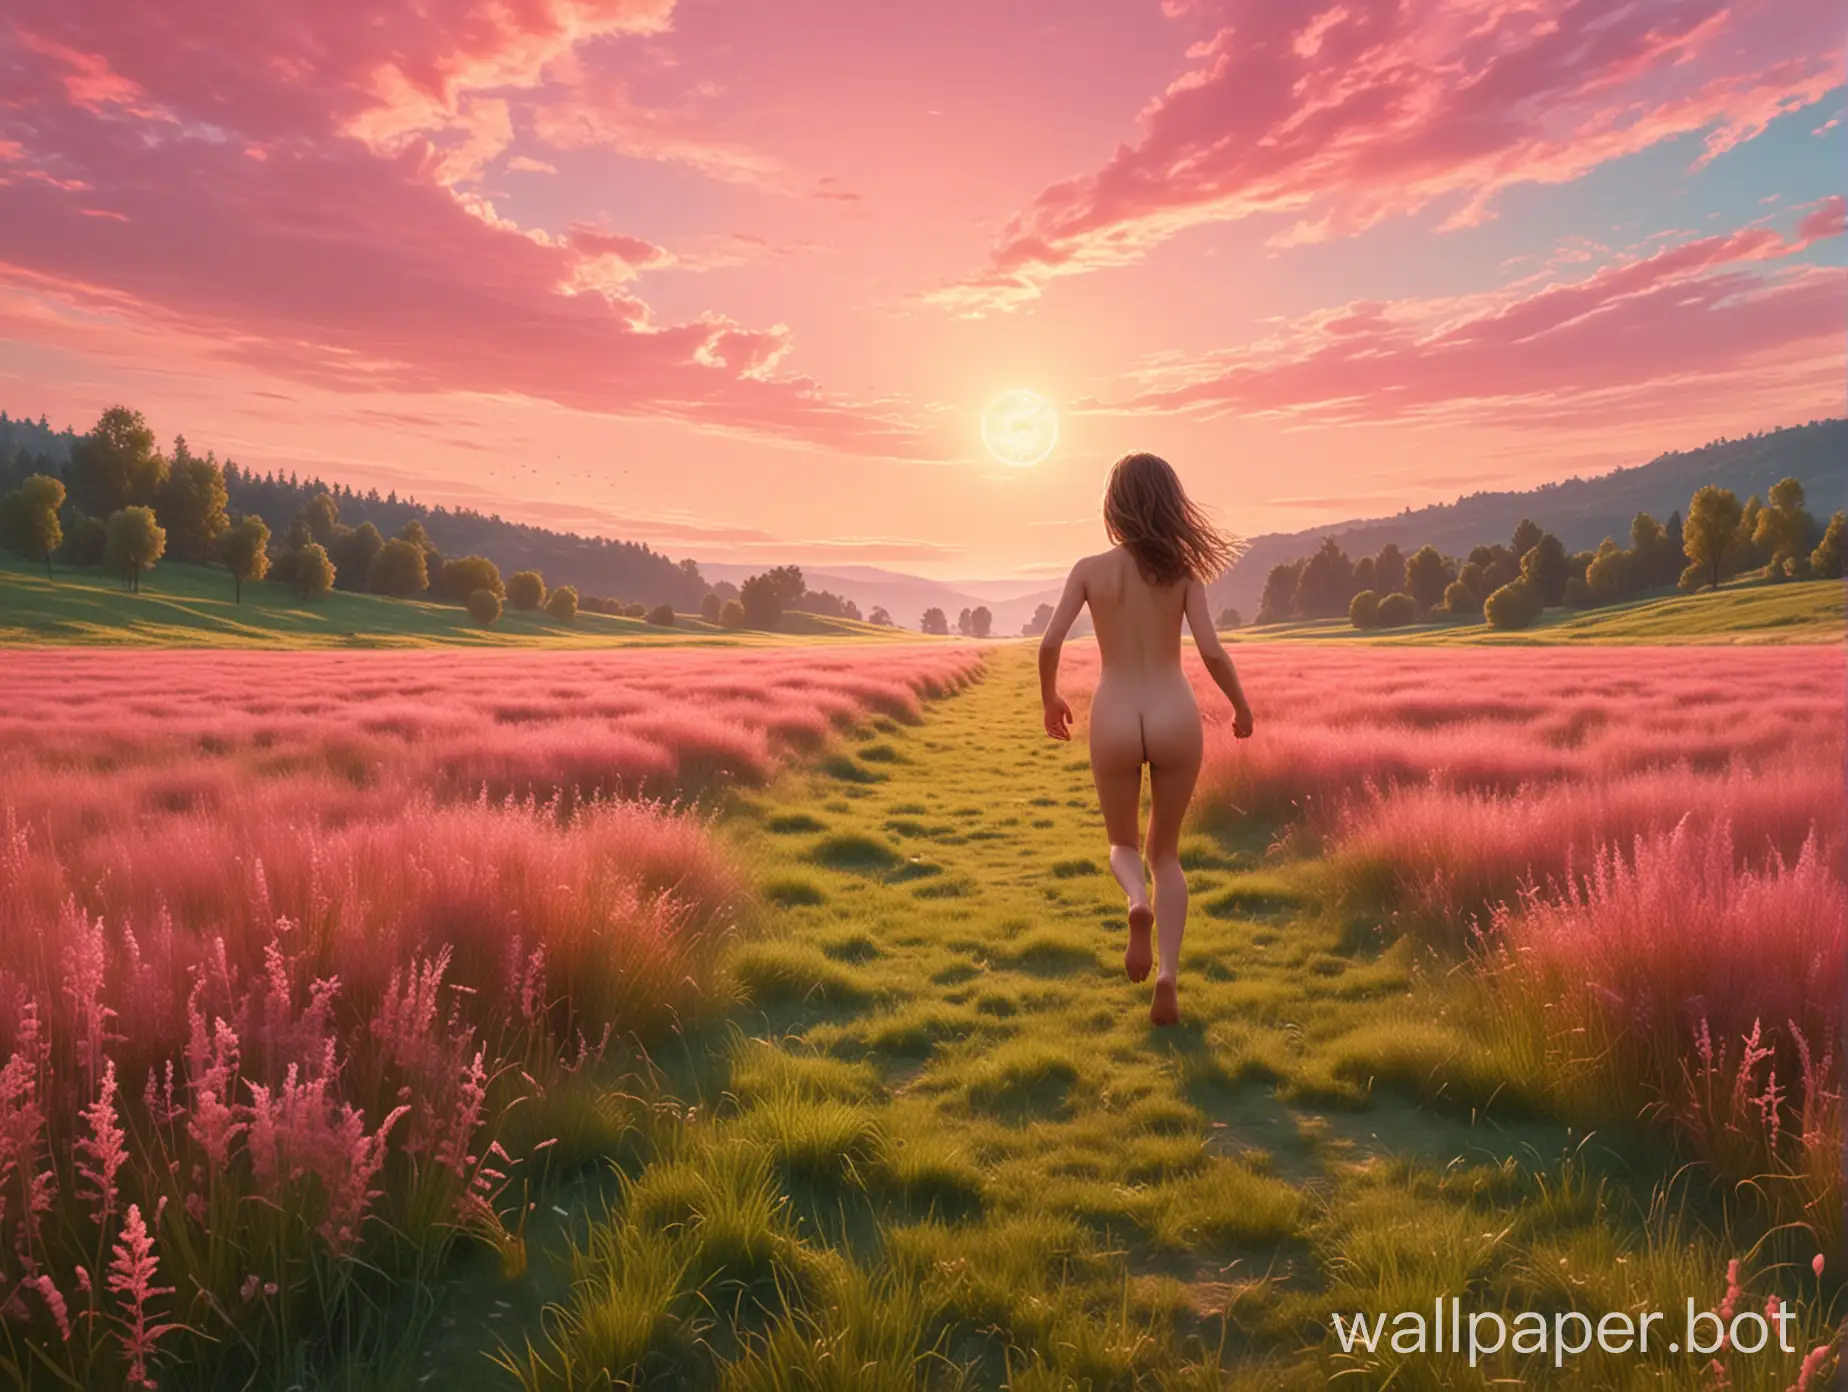 Счастливая девочка нудист 11 лет бежит мечте навстречу по лугу с розовой травой под нежно-зелёным небом футуризм барокко